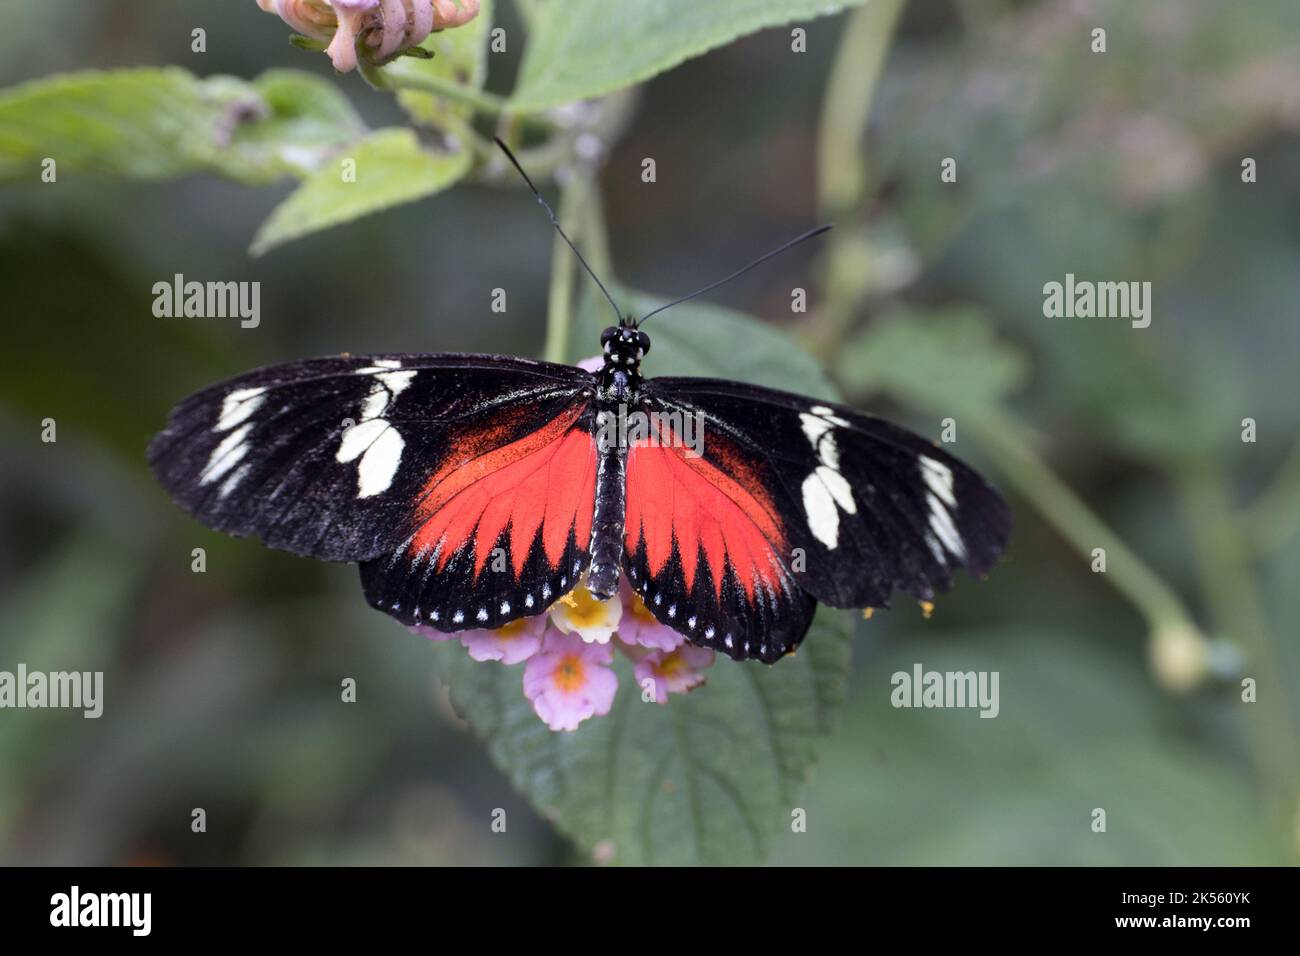 Singola farfalla Postman Heliconius melpomene è una farfalla dai colori vivaci che si trova in tutta l'America Centrale e Meridionale; Stratford on Avon Butterfly Foto Stock